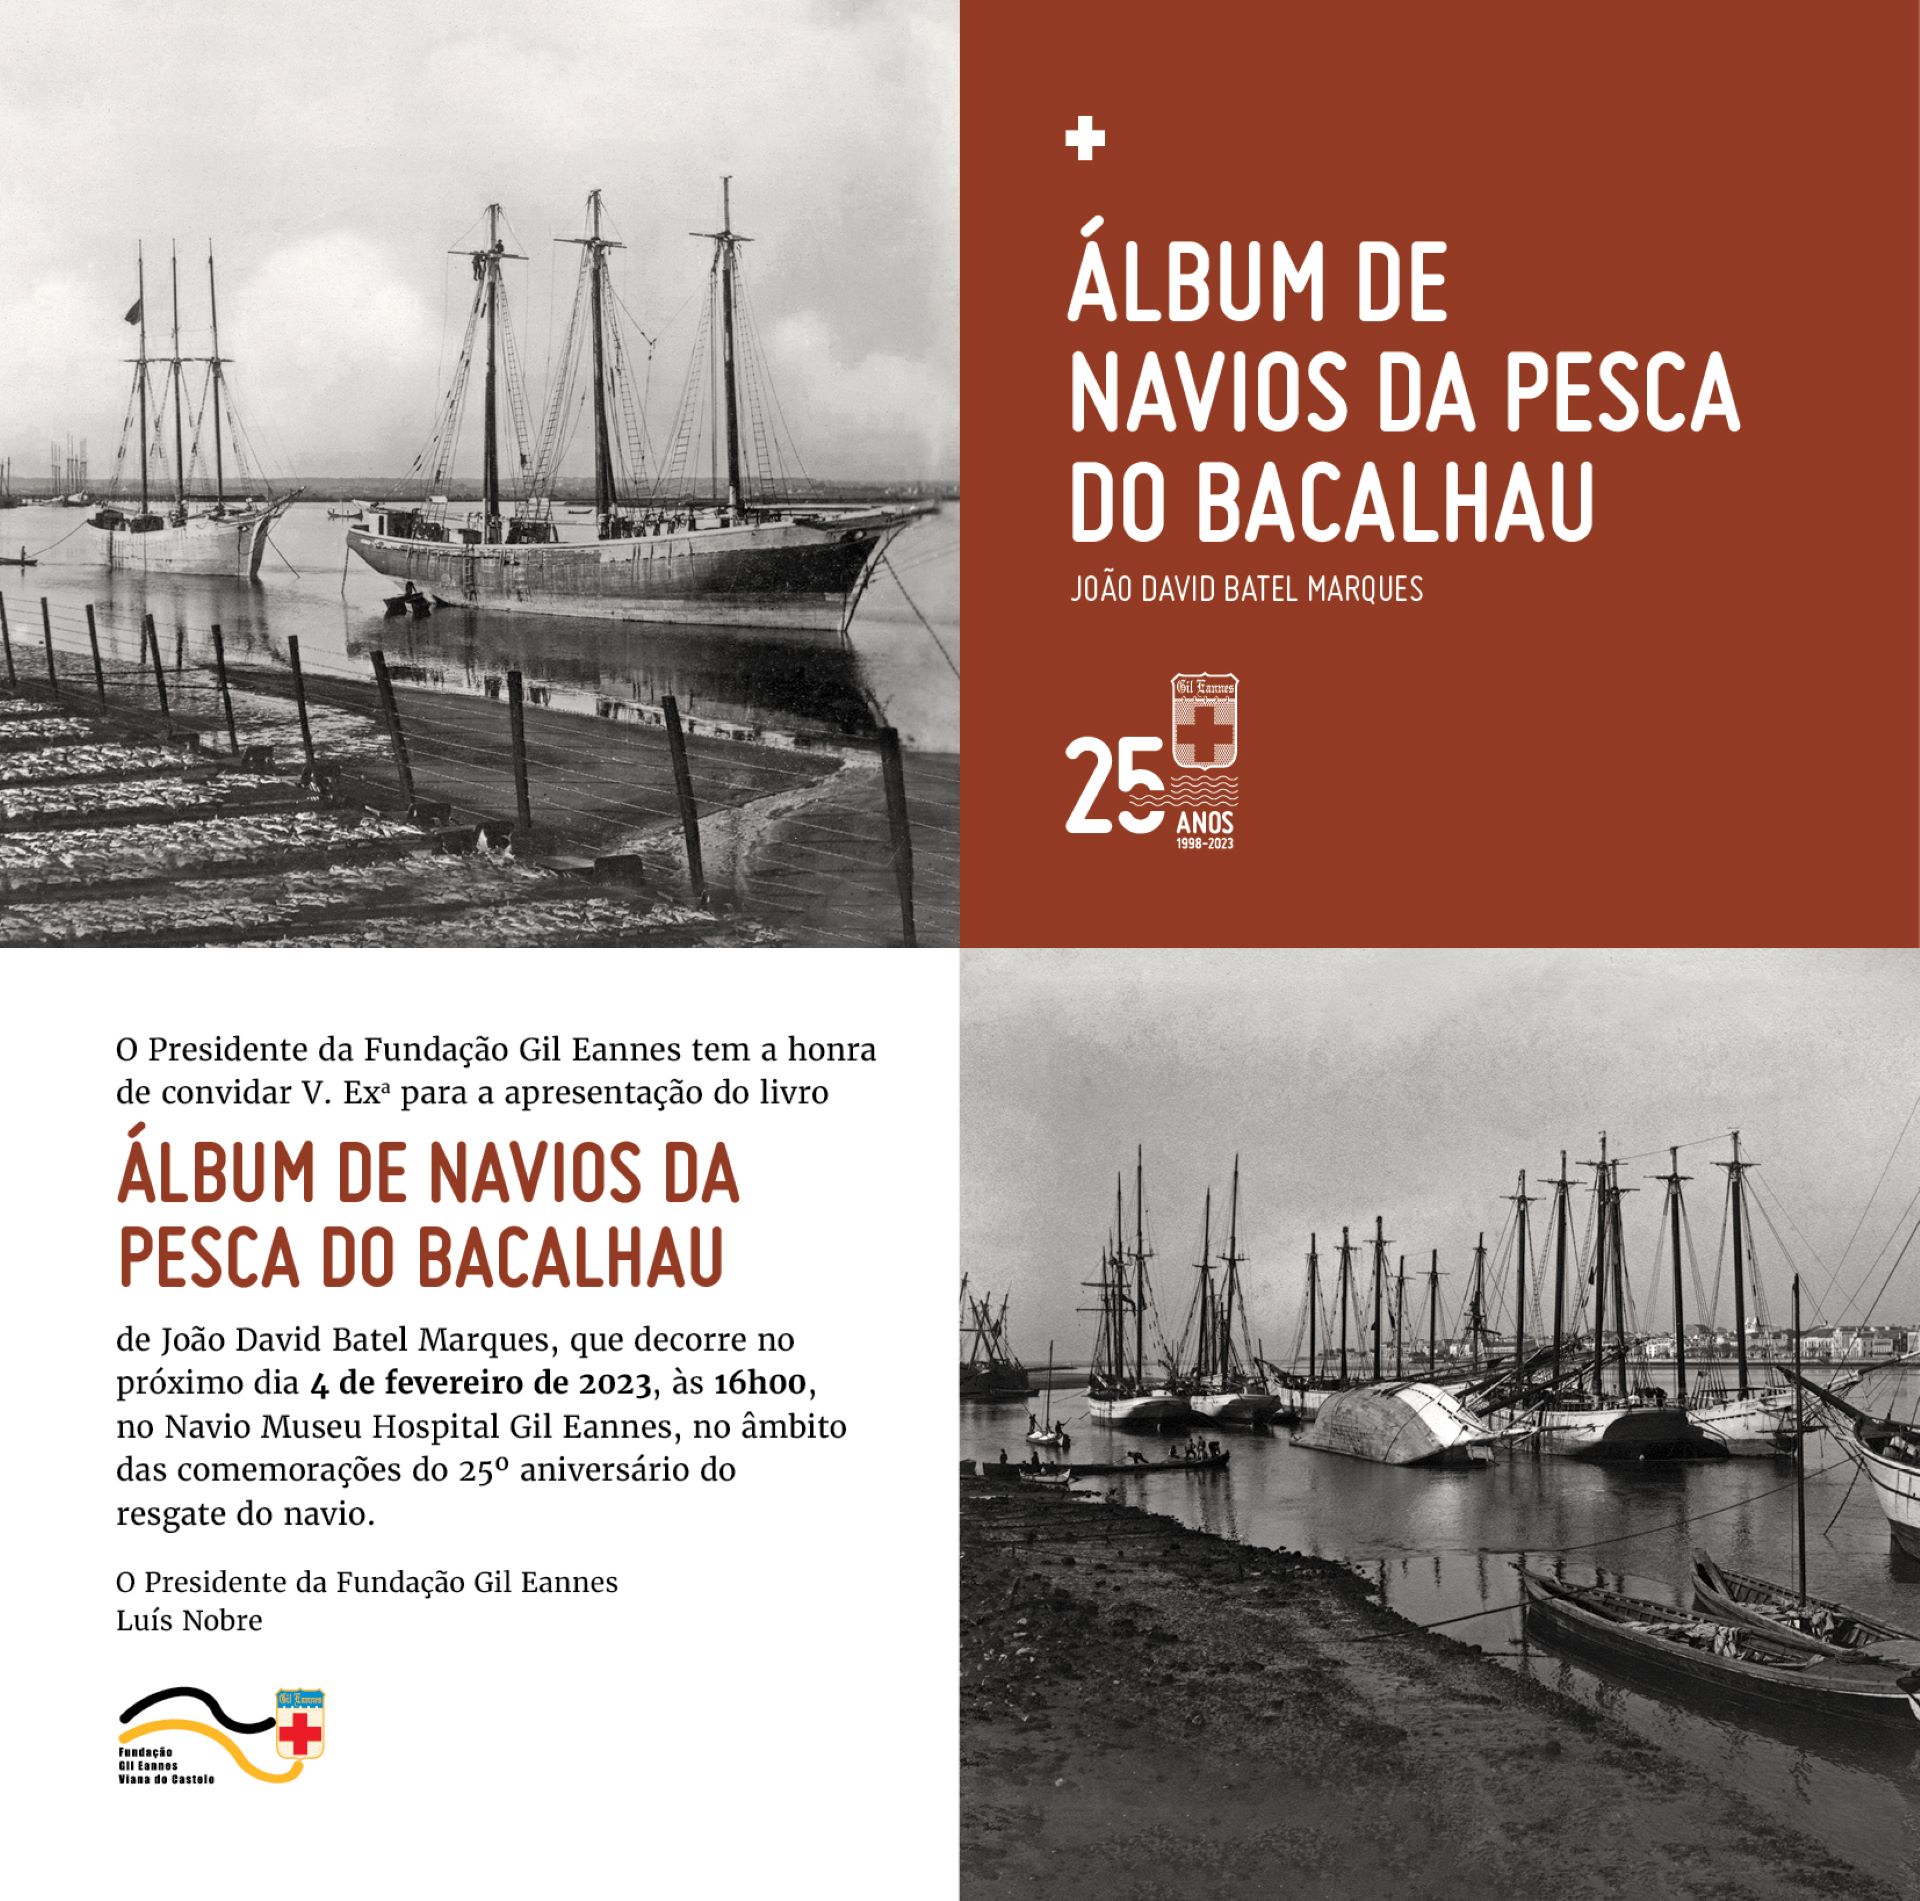 Apresentação do livro “Álbum de Navios da Pesca do Bacalhau” de João David Batel Marques